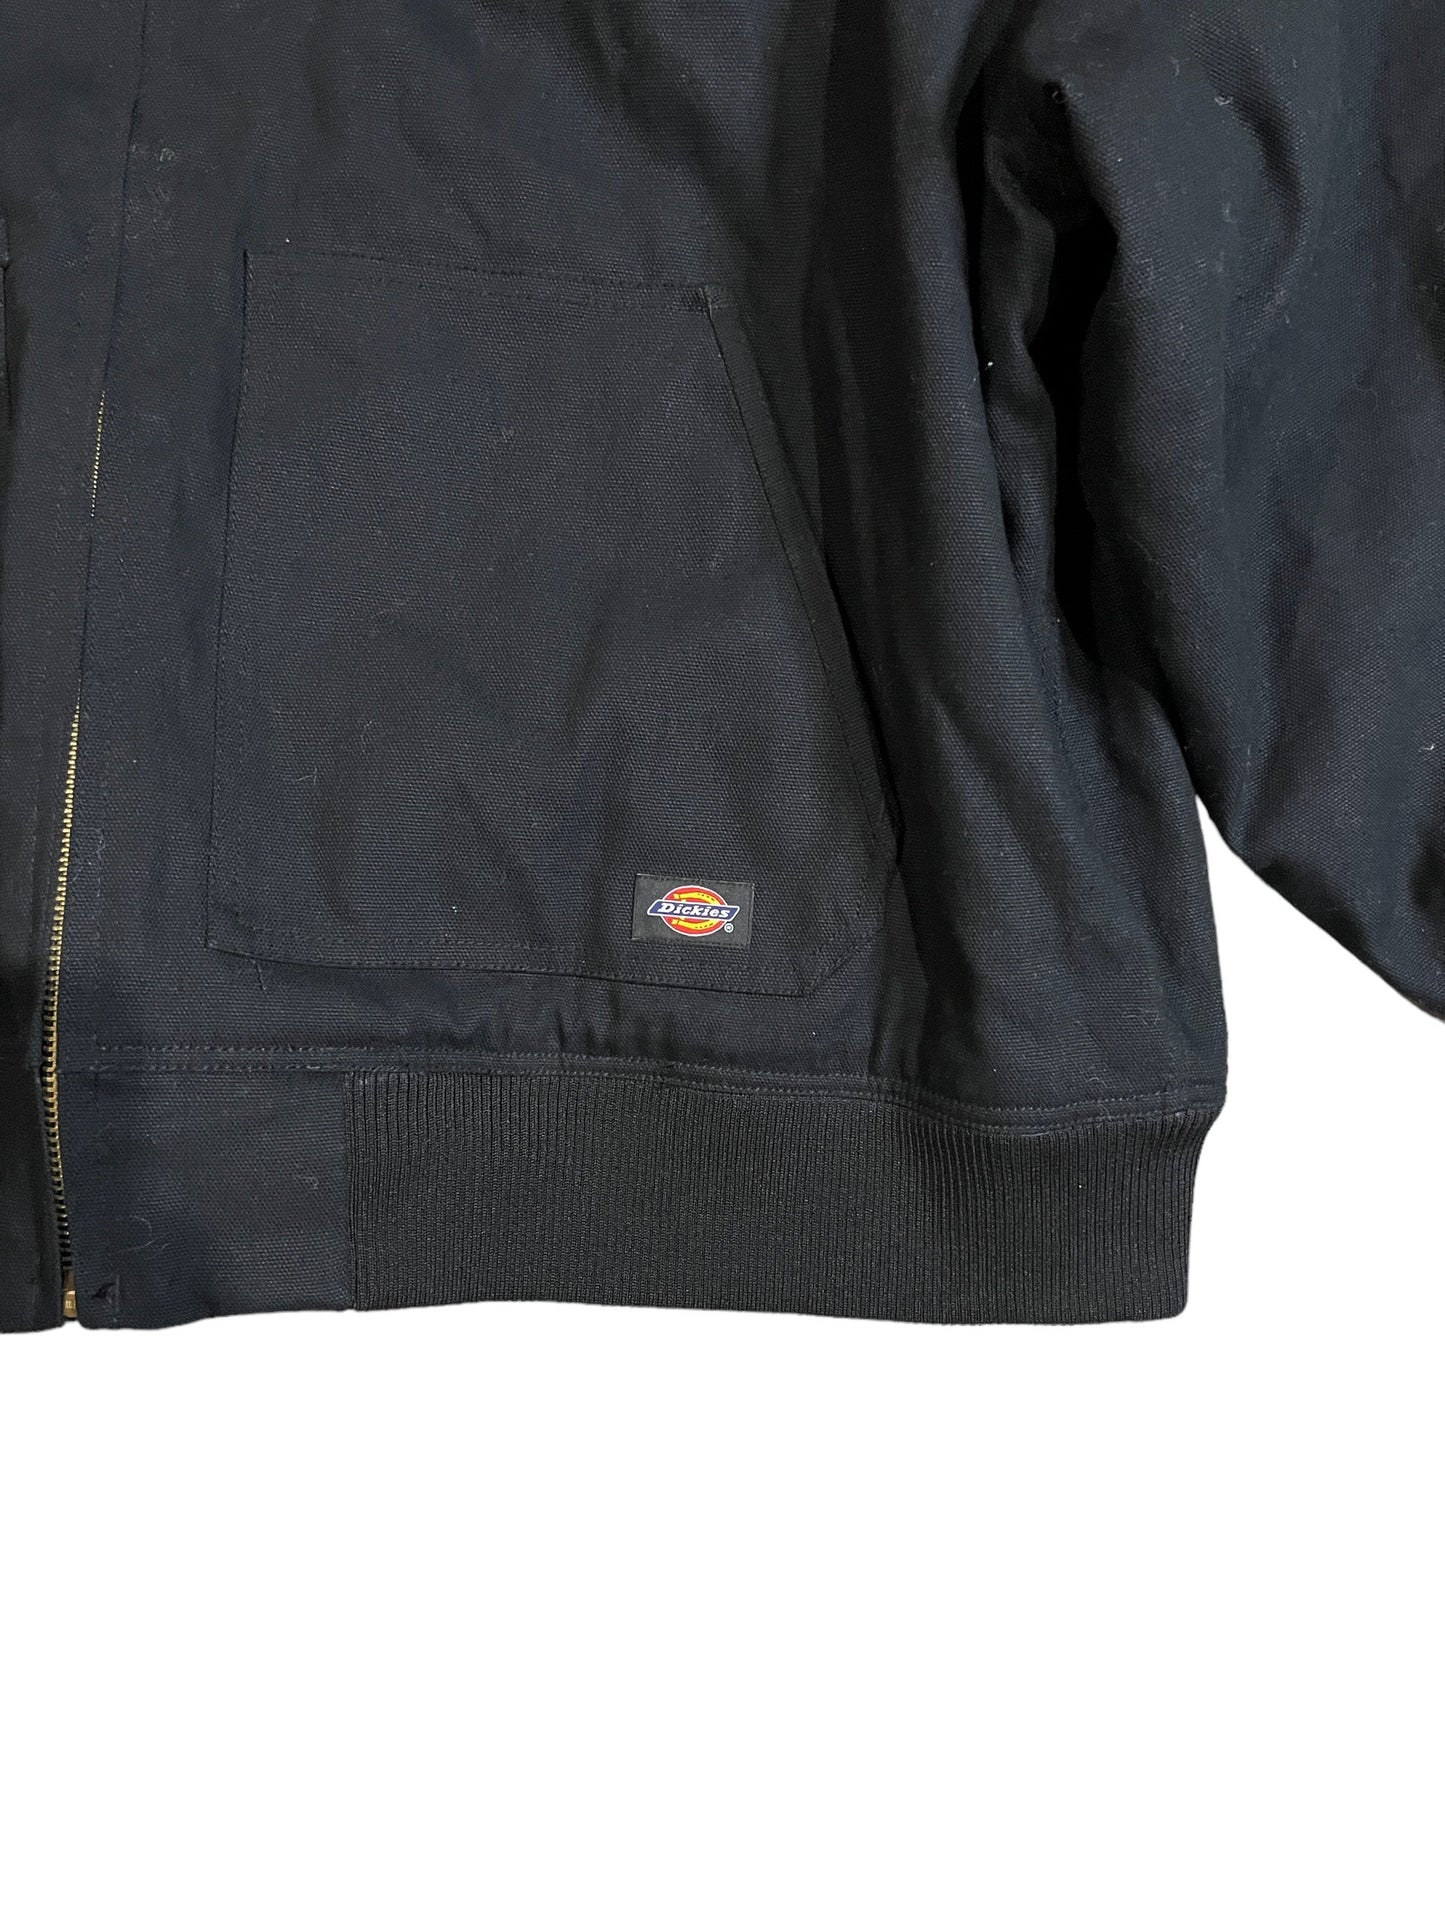 Vintage Dickies Work Zip- Up Jacket